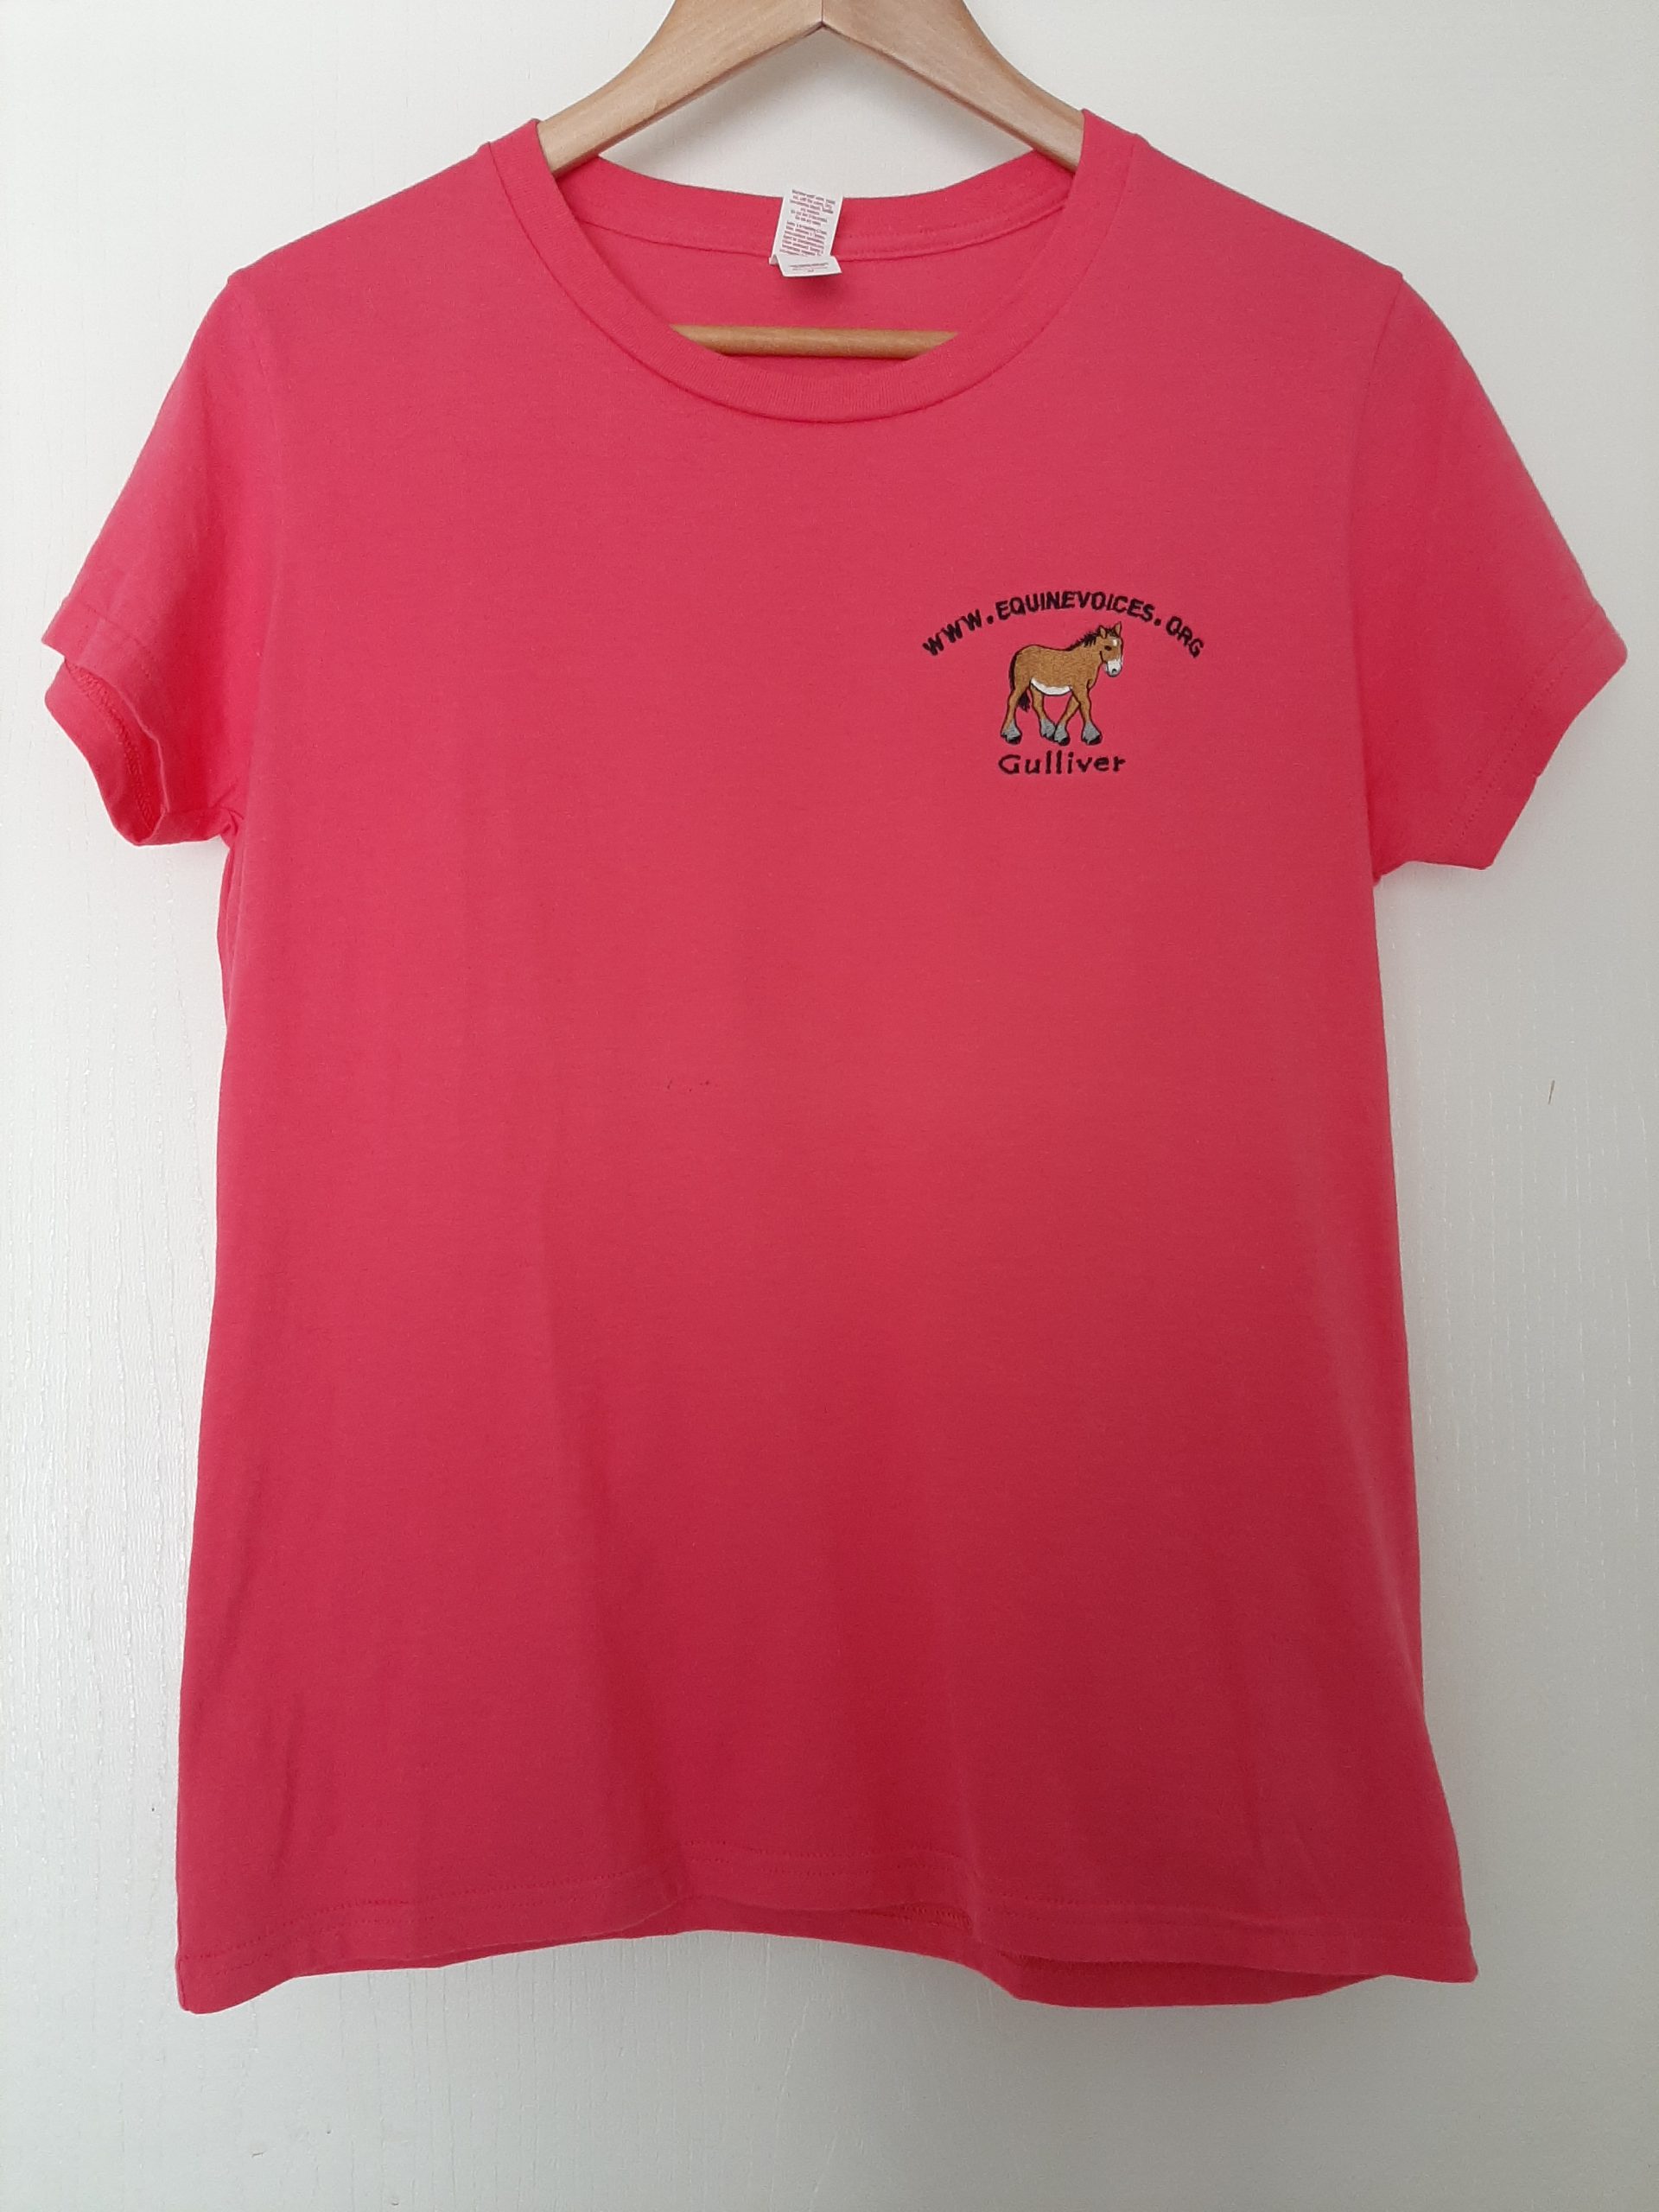 Woman's Gulliver Logo T-Shirt - Equine Voices Rescue & Sanctuary